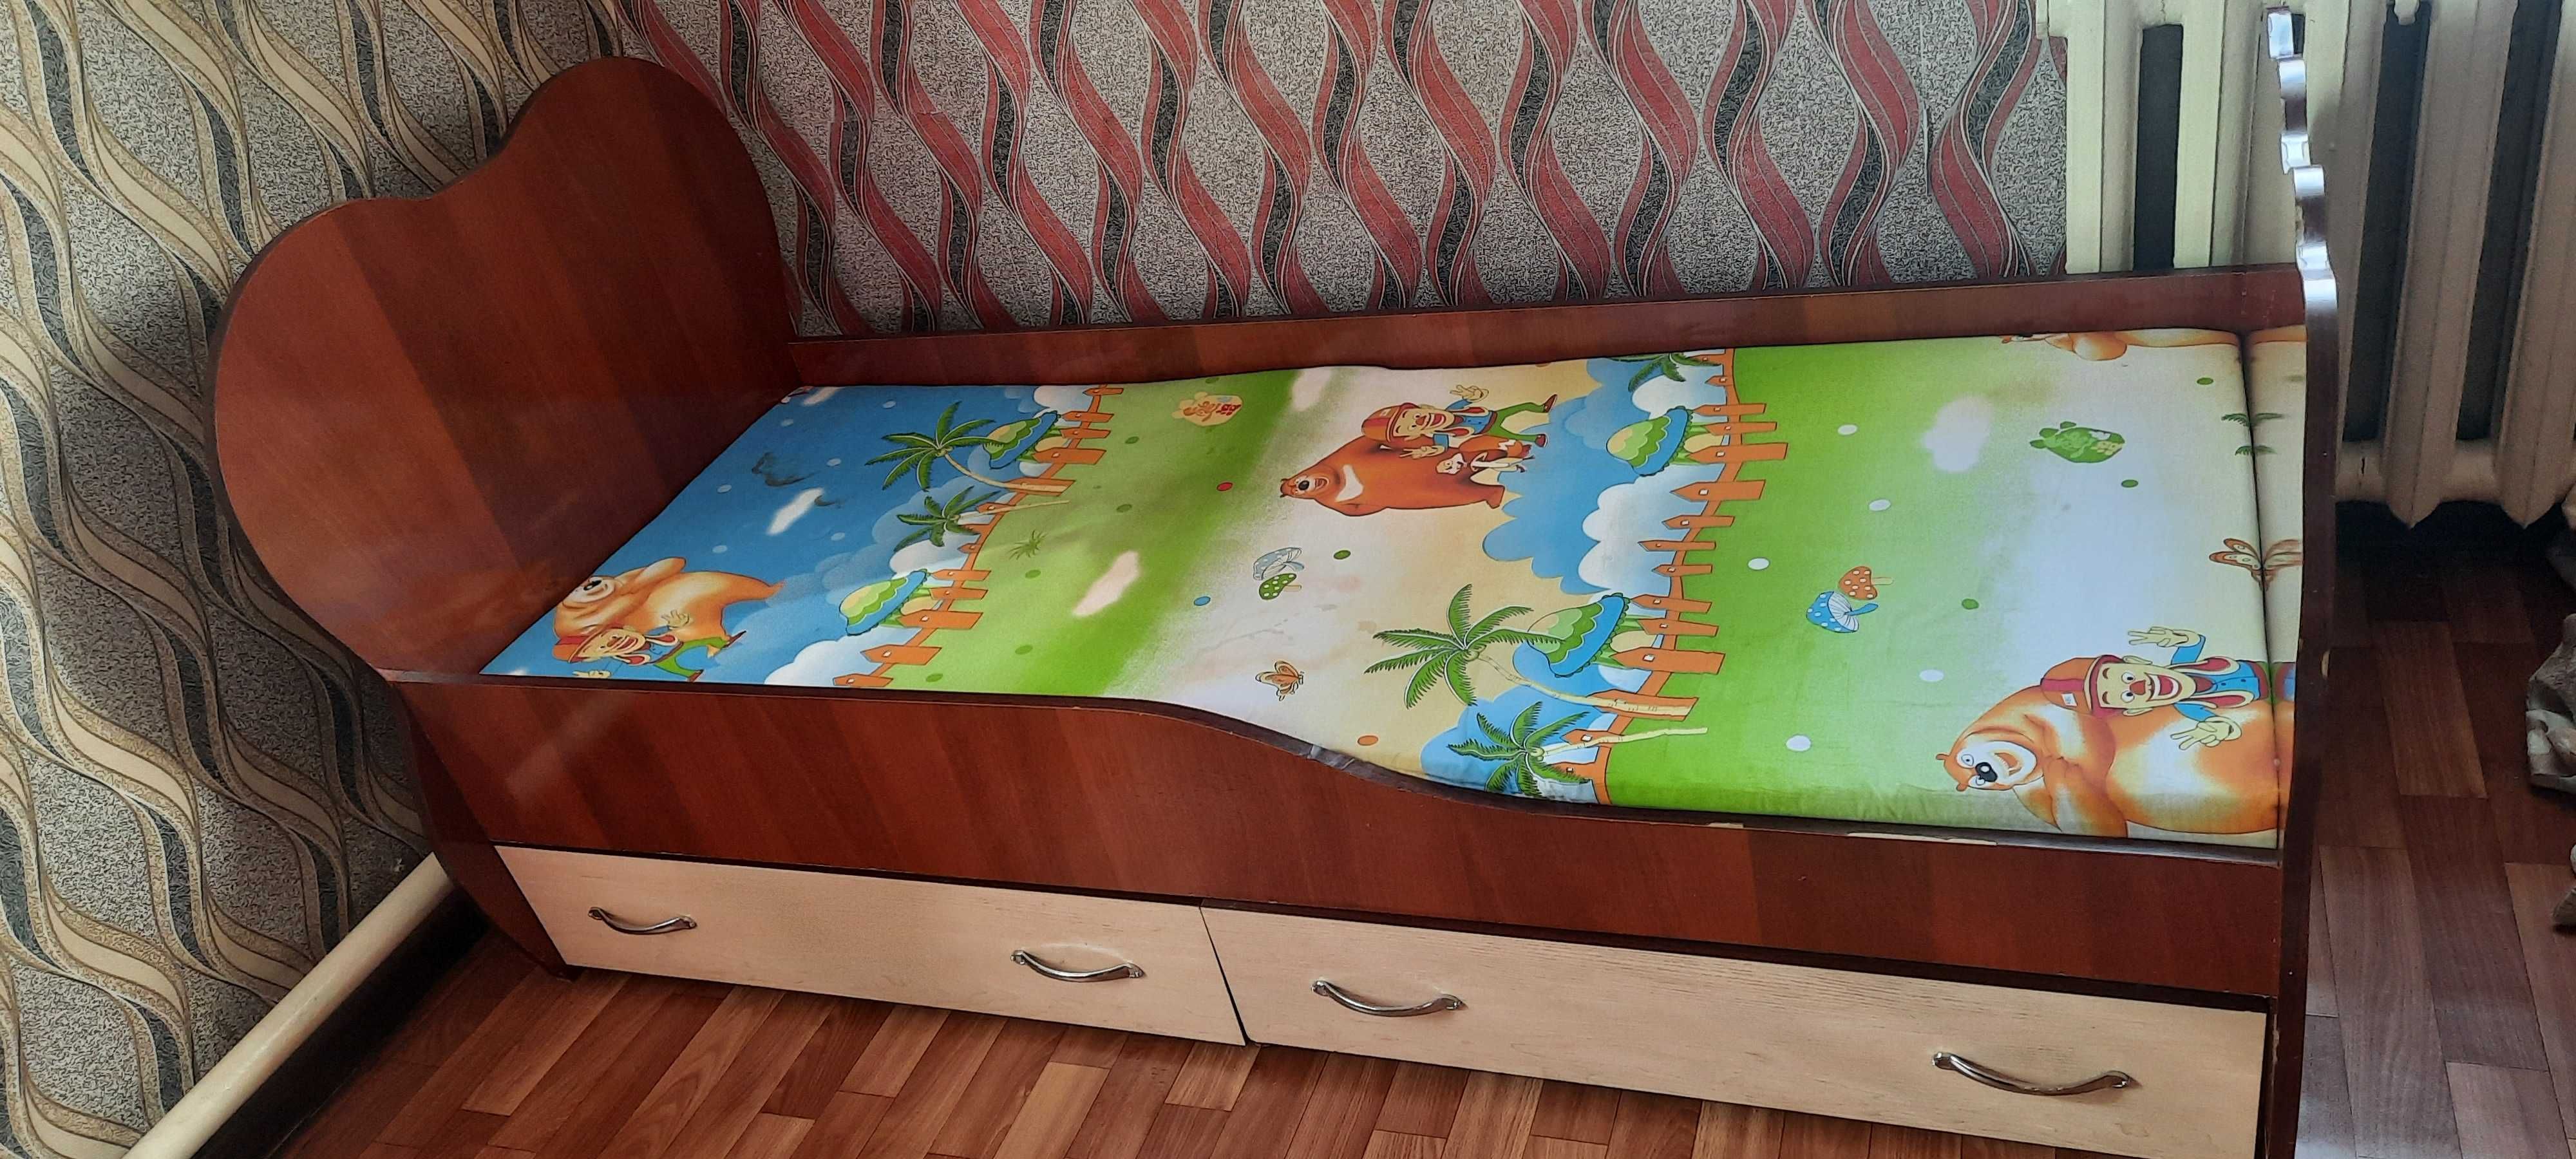 Кровать детская. Размер 164×70 см.